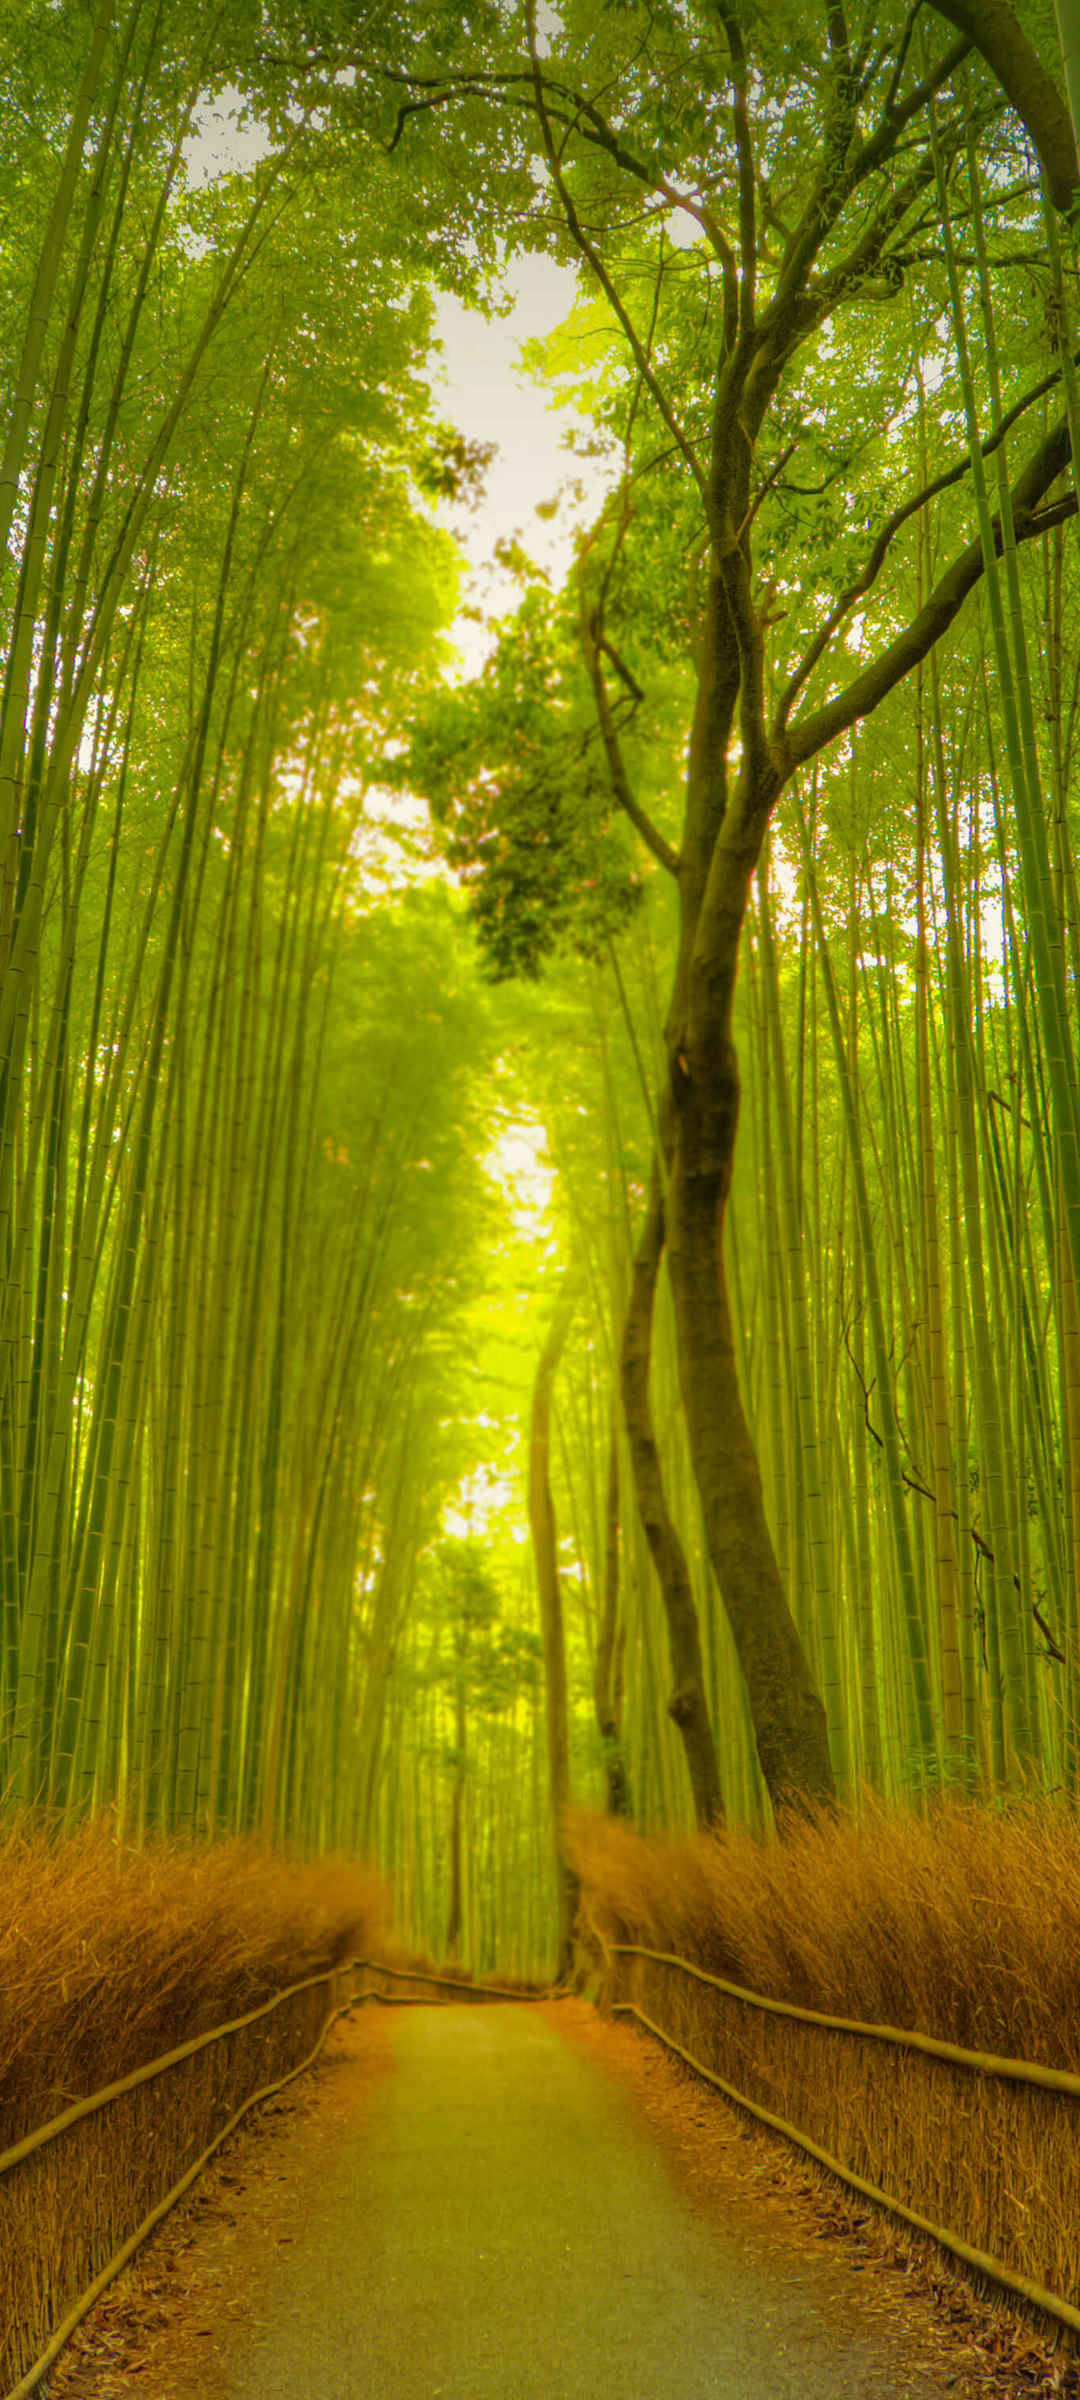 绿色竹林小道护眼风景手机壁纸